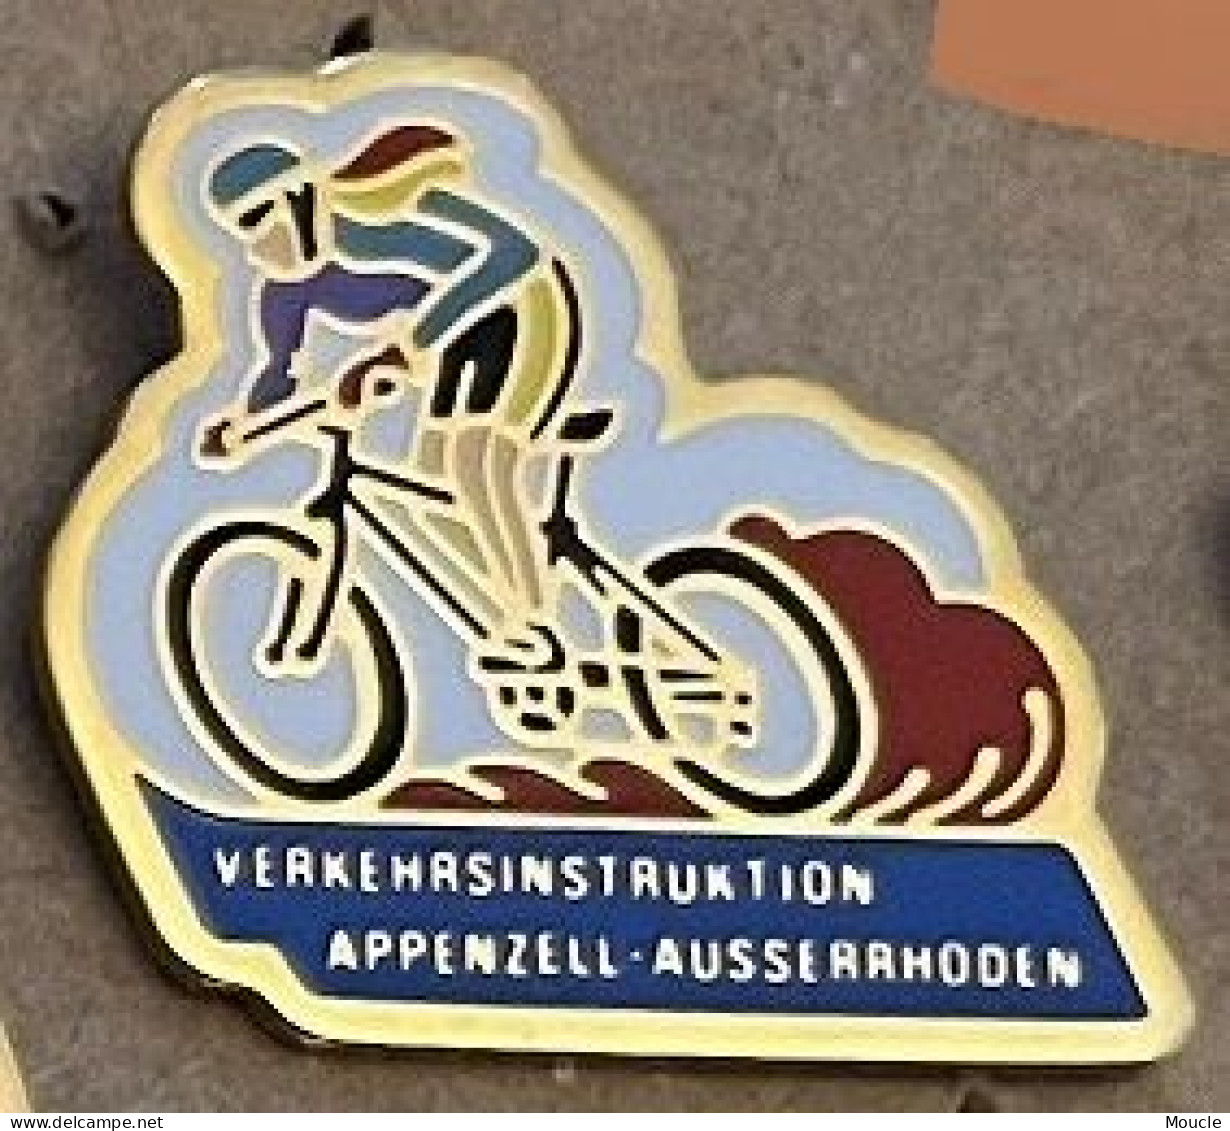 VELO - CYCLISME - BIKE - CYCLISTE - VERKEHRSINSTROKTION - APPENZELL - AUSSERRODEN - SUISSE - SCHWEIZ - SWISS - (22) - Cycling